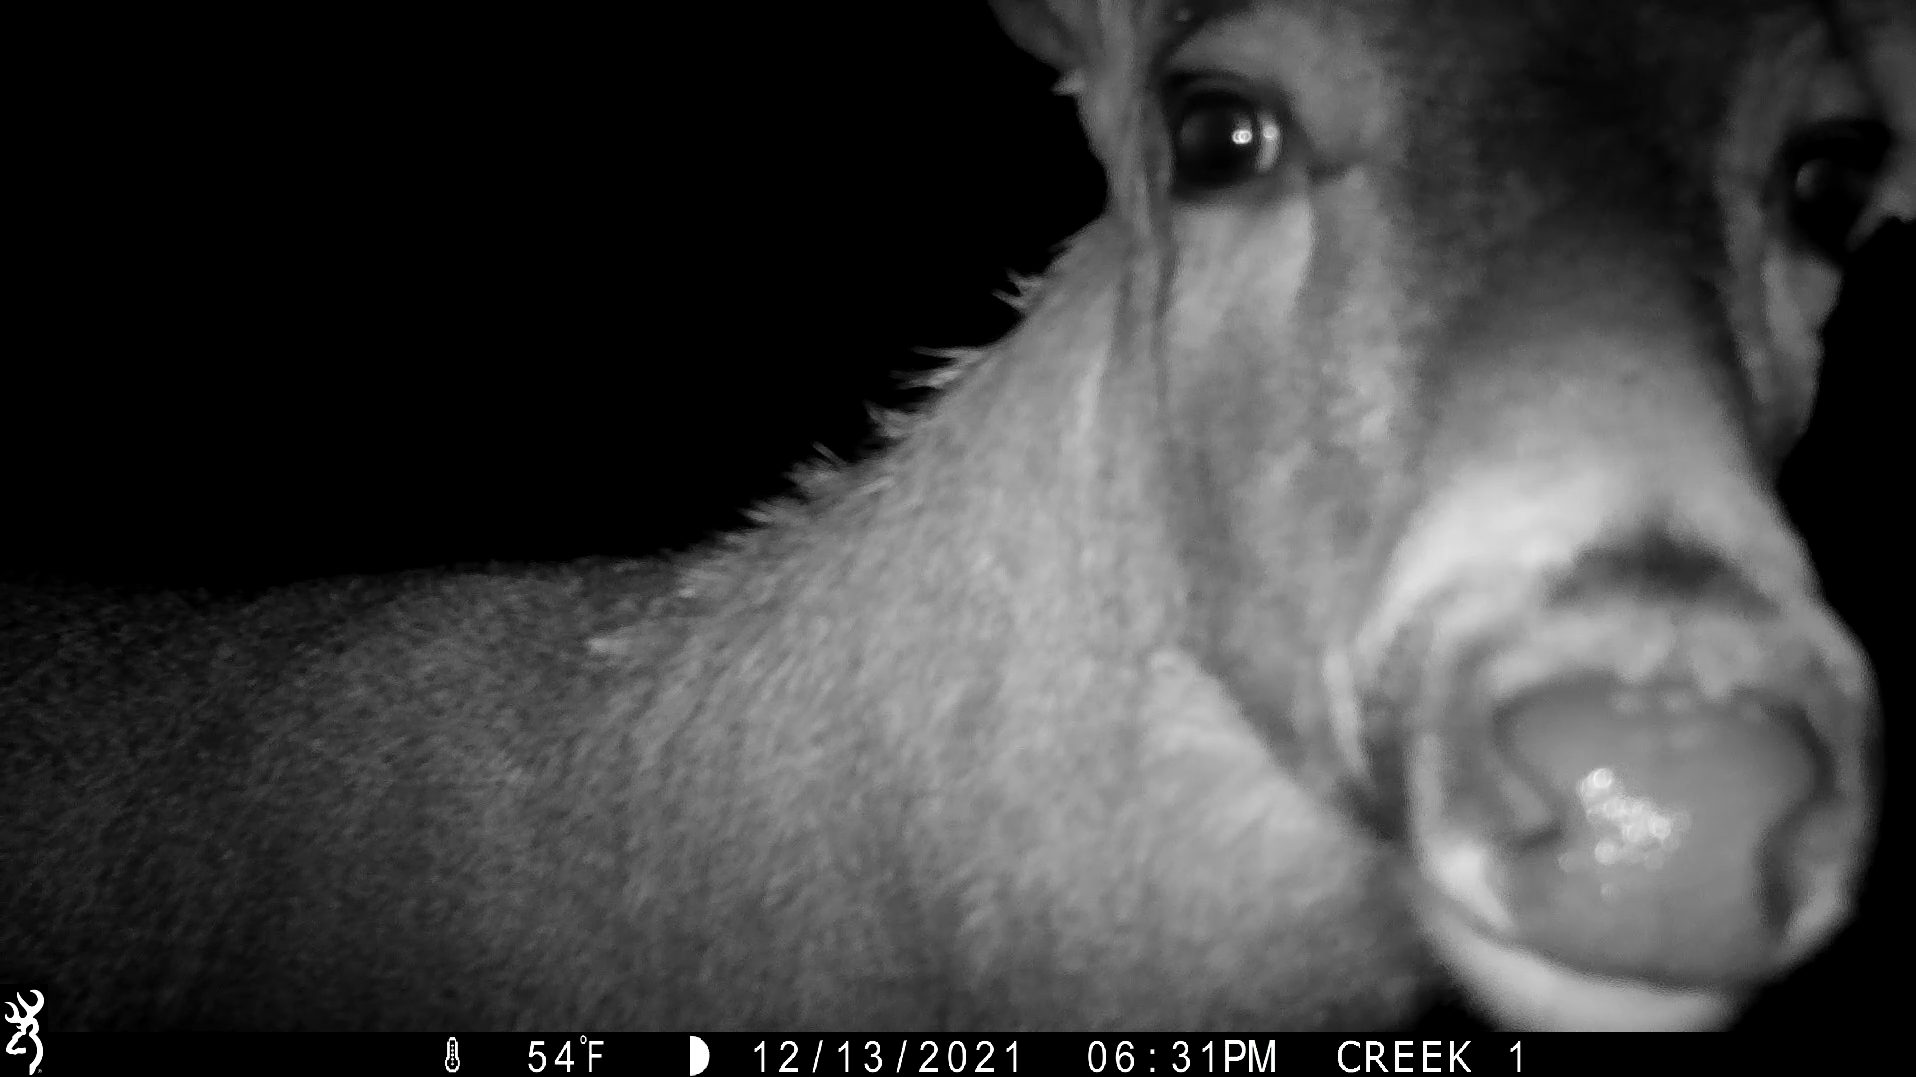 Deer looking into camera